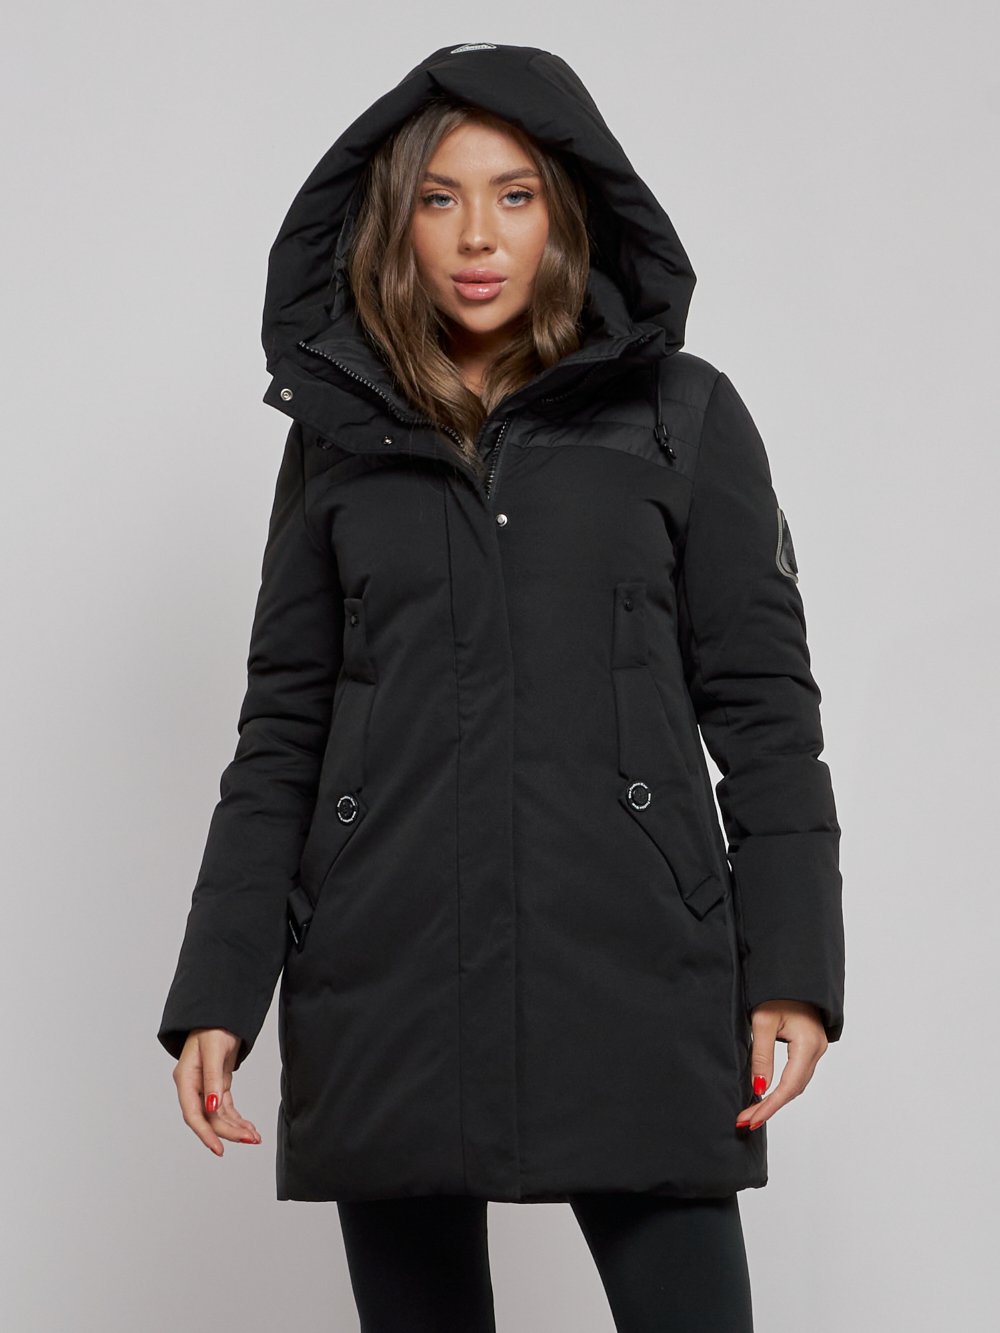 Купить куртку женскую оптом от производителя недорого в Москве 589003Ch 1